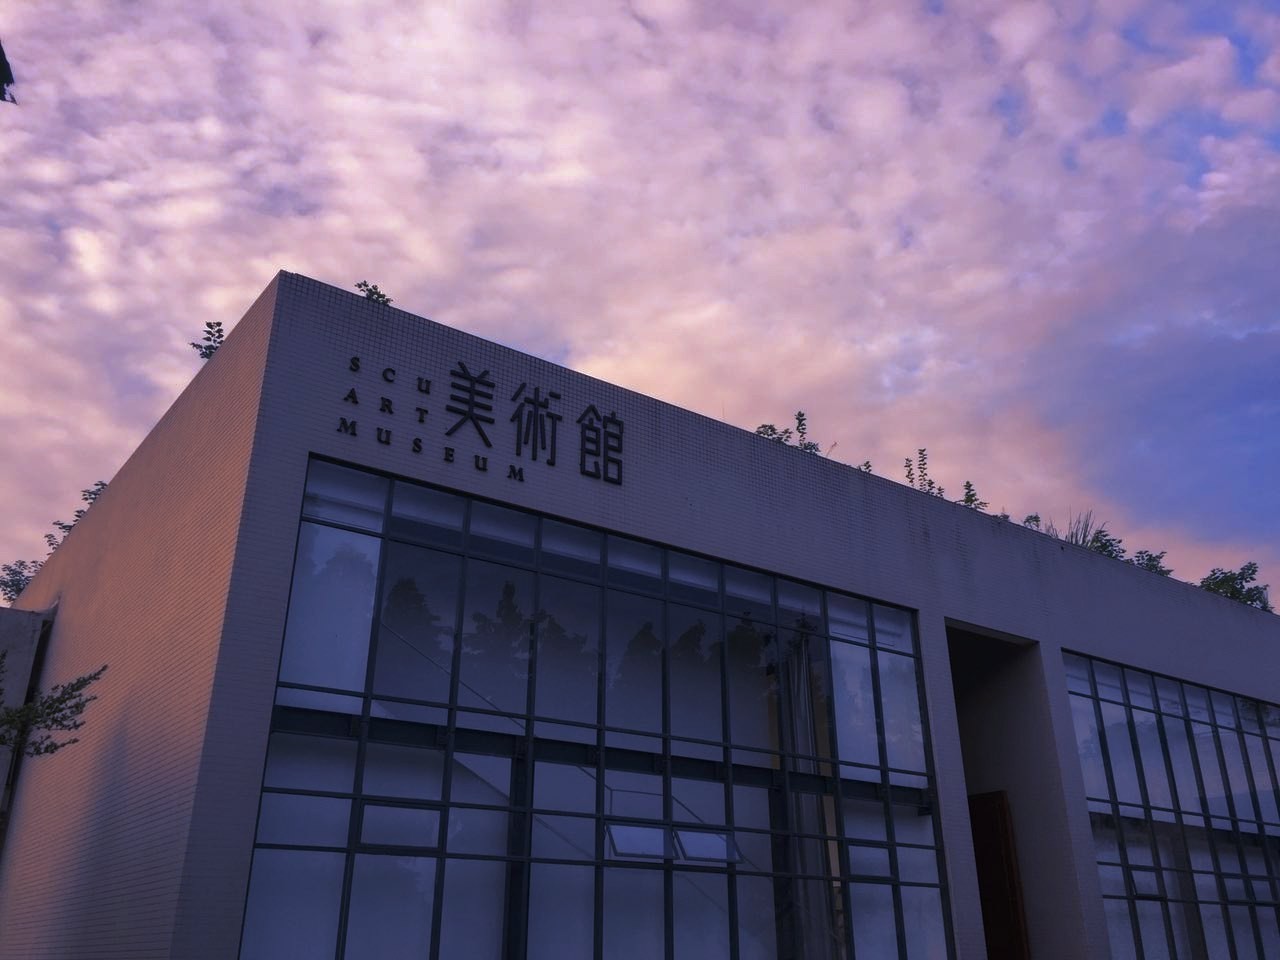 四川大学美术馆 scu art museum